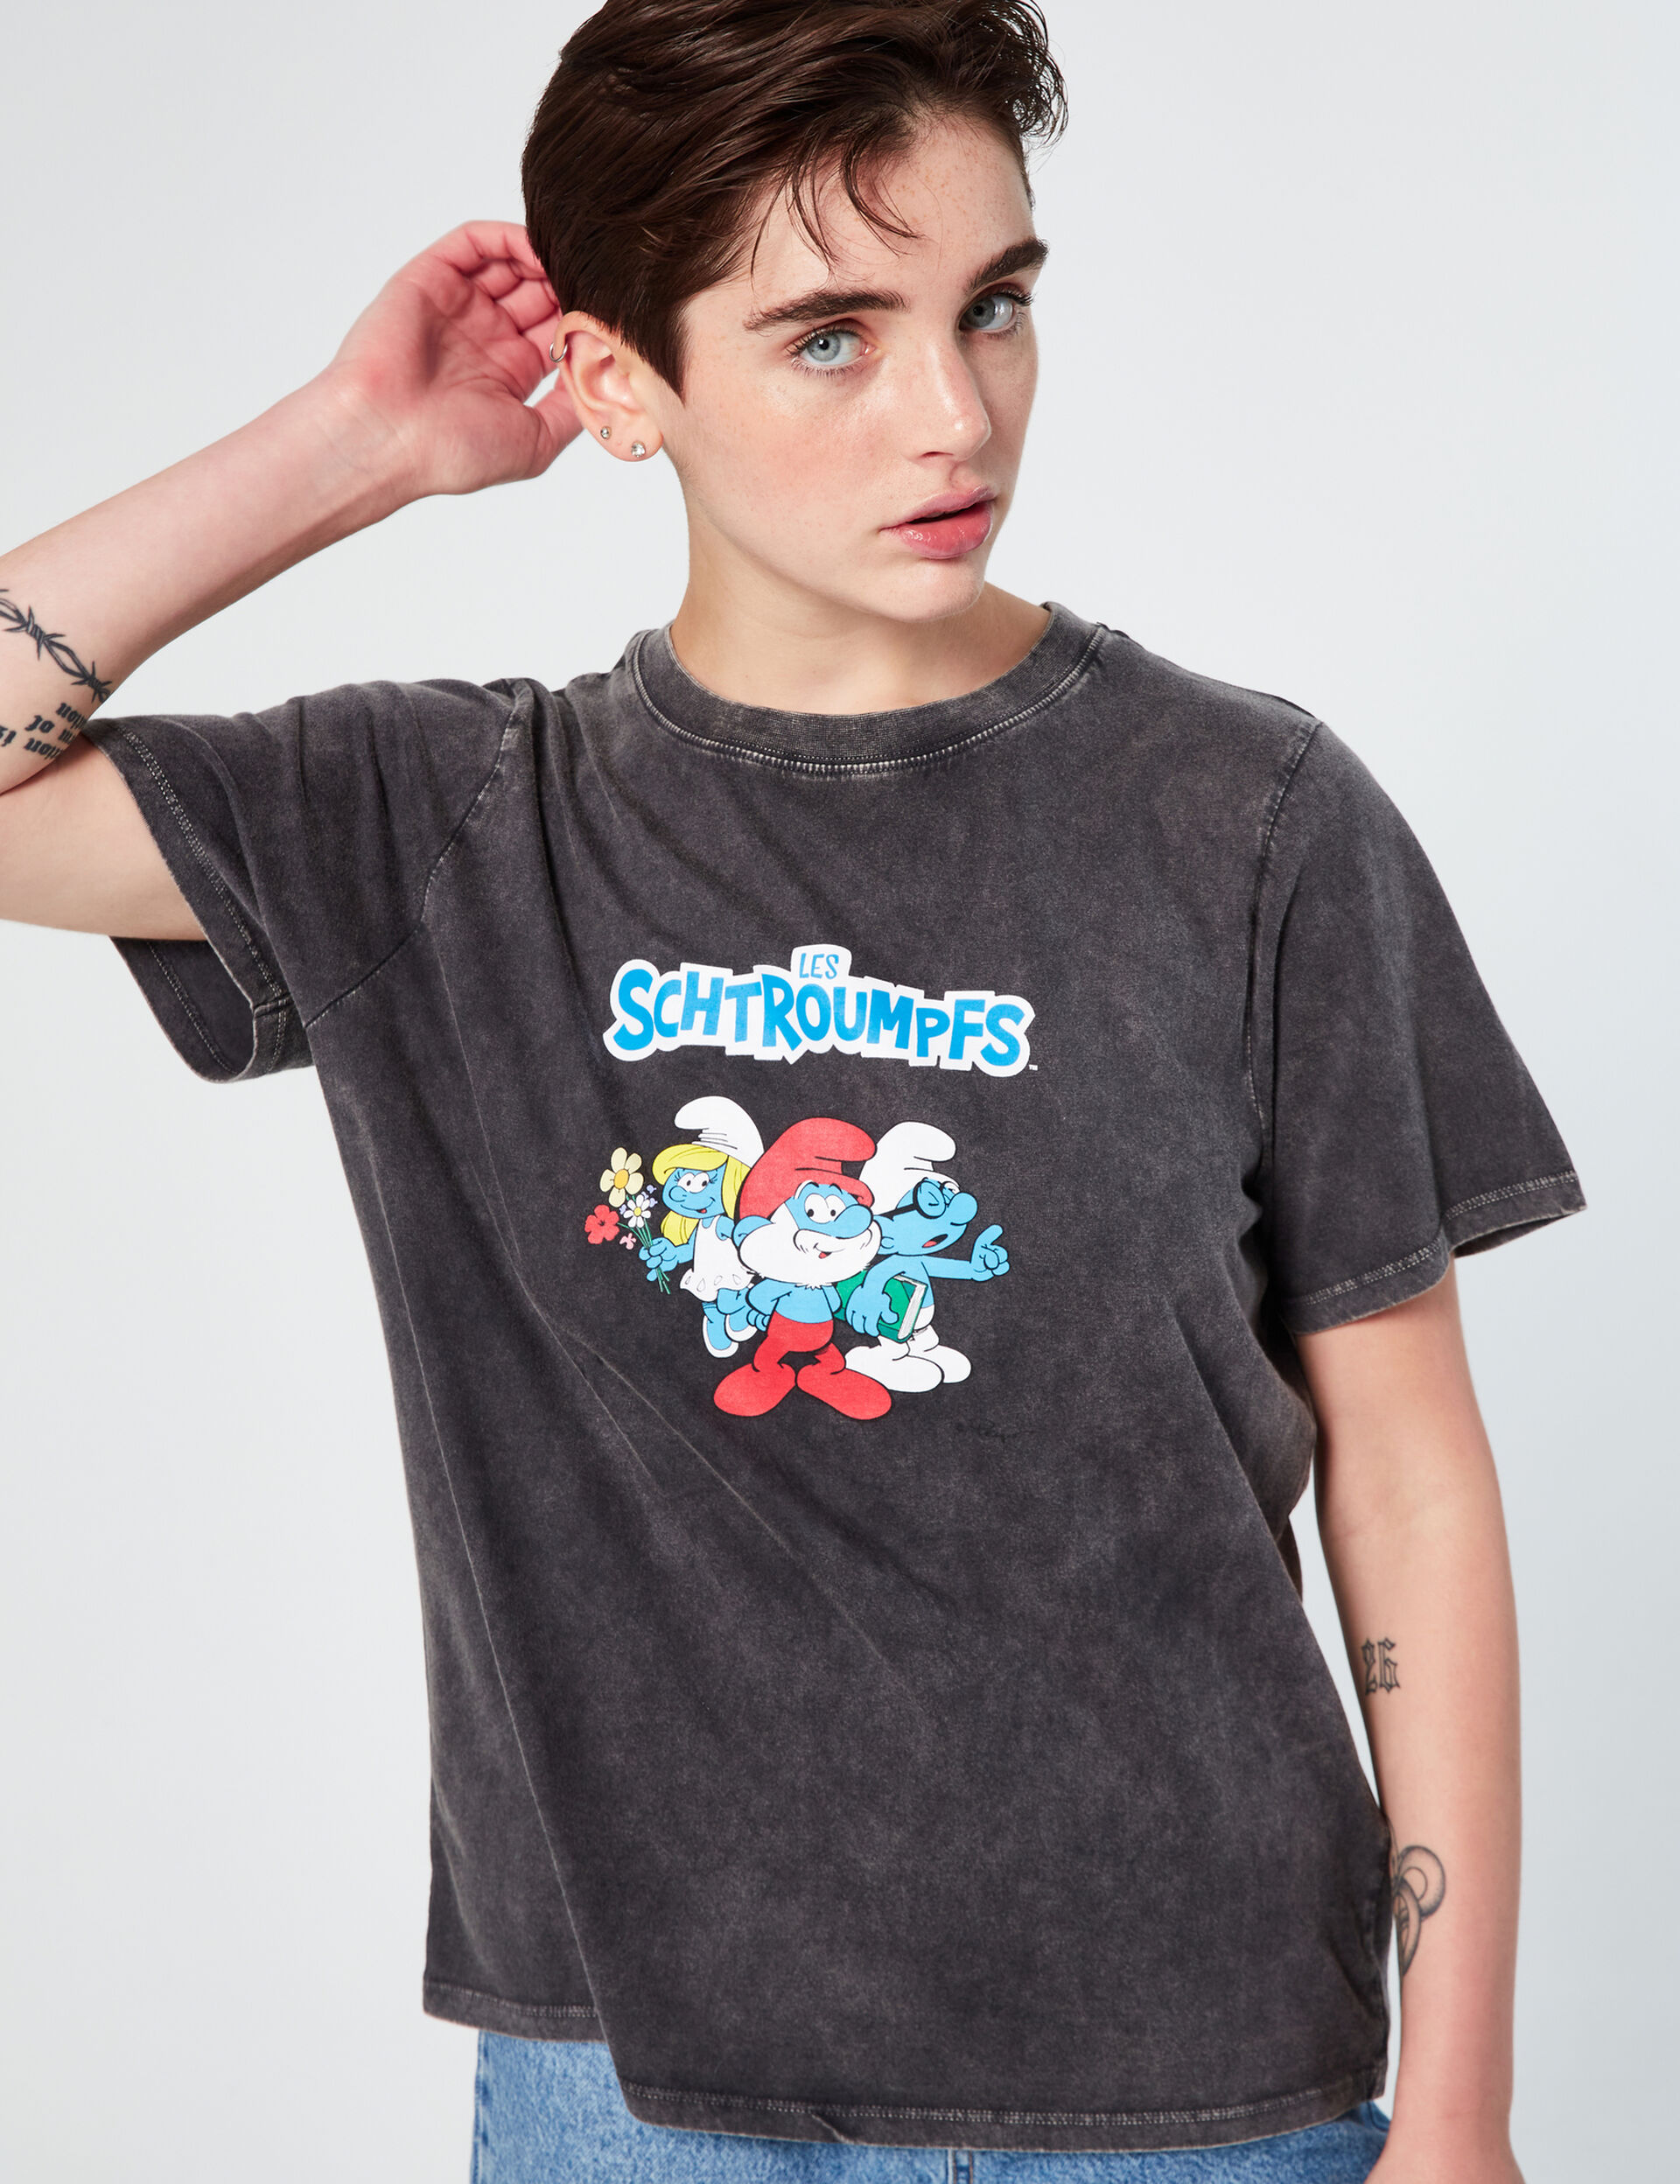 The Smurfs T-shirt